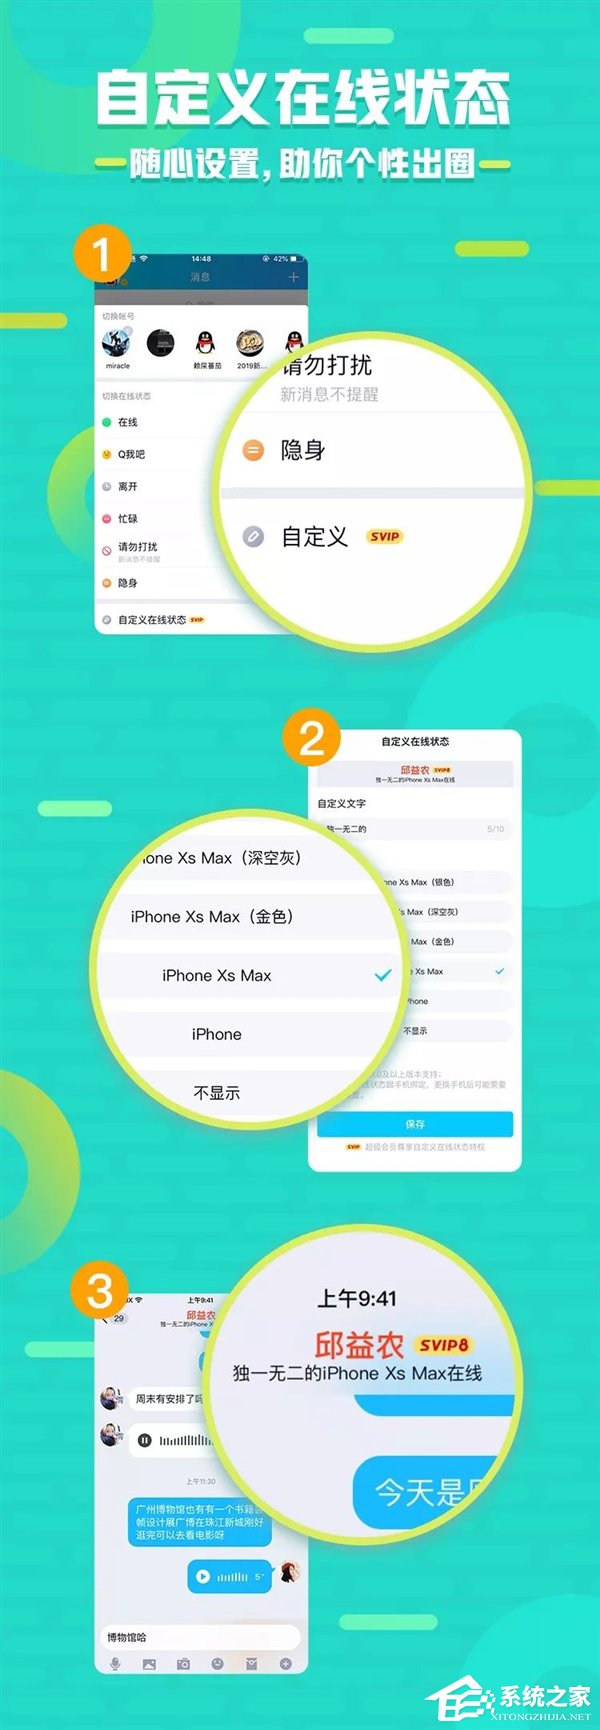 官方公布手机QQ新特权/功能/玩法”